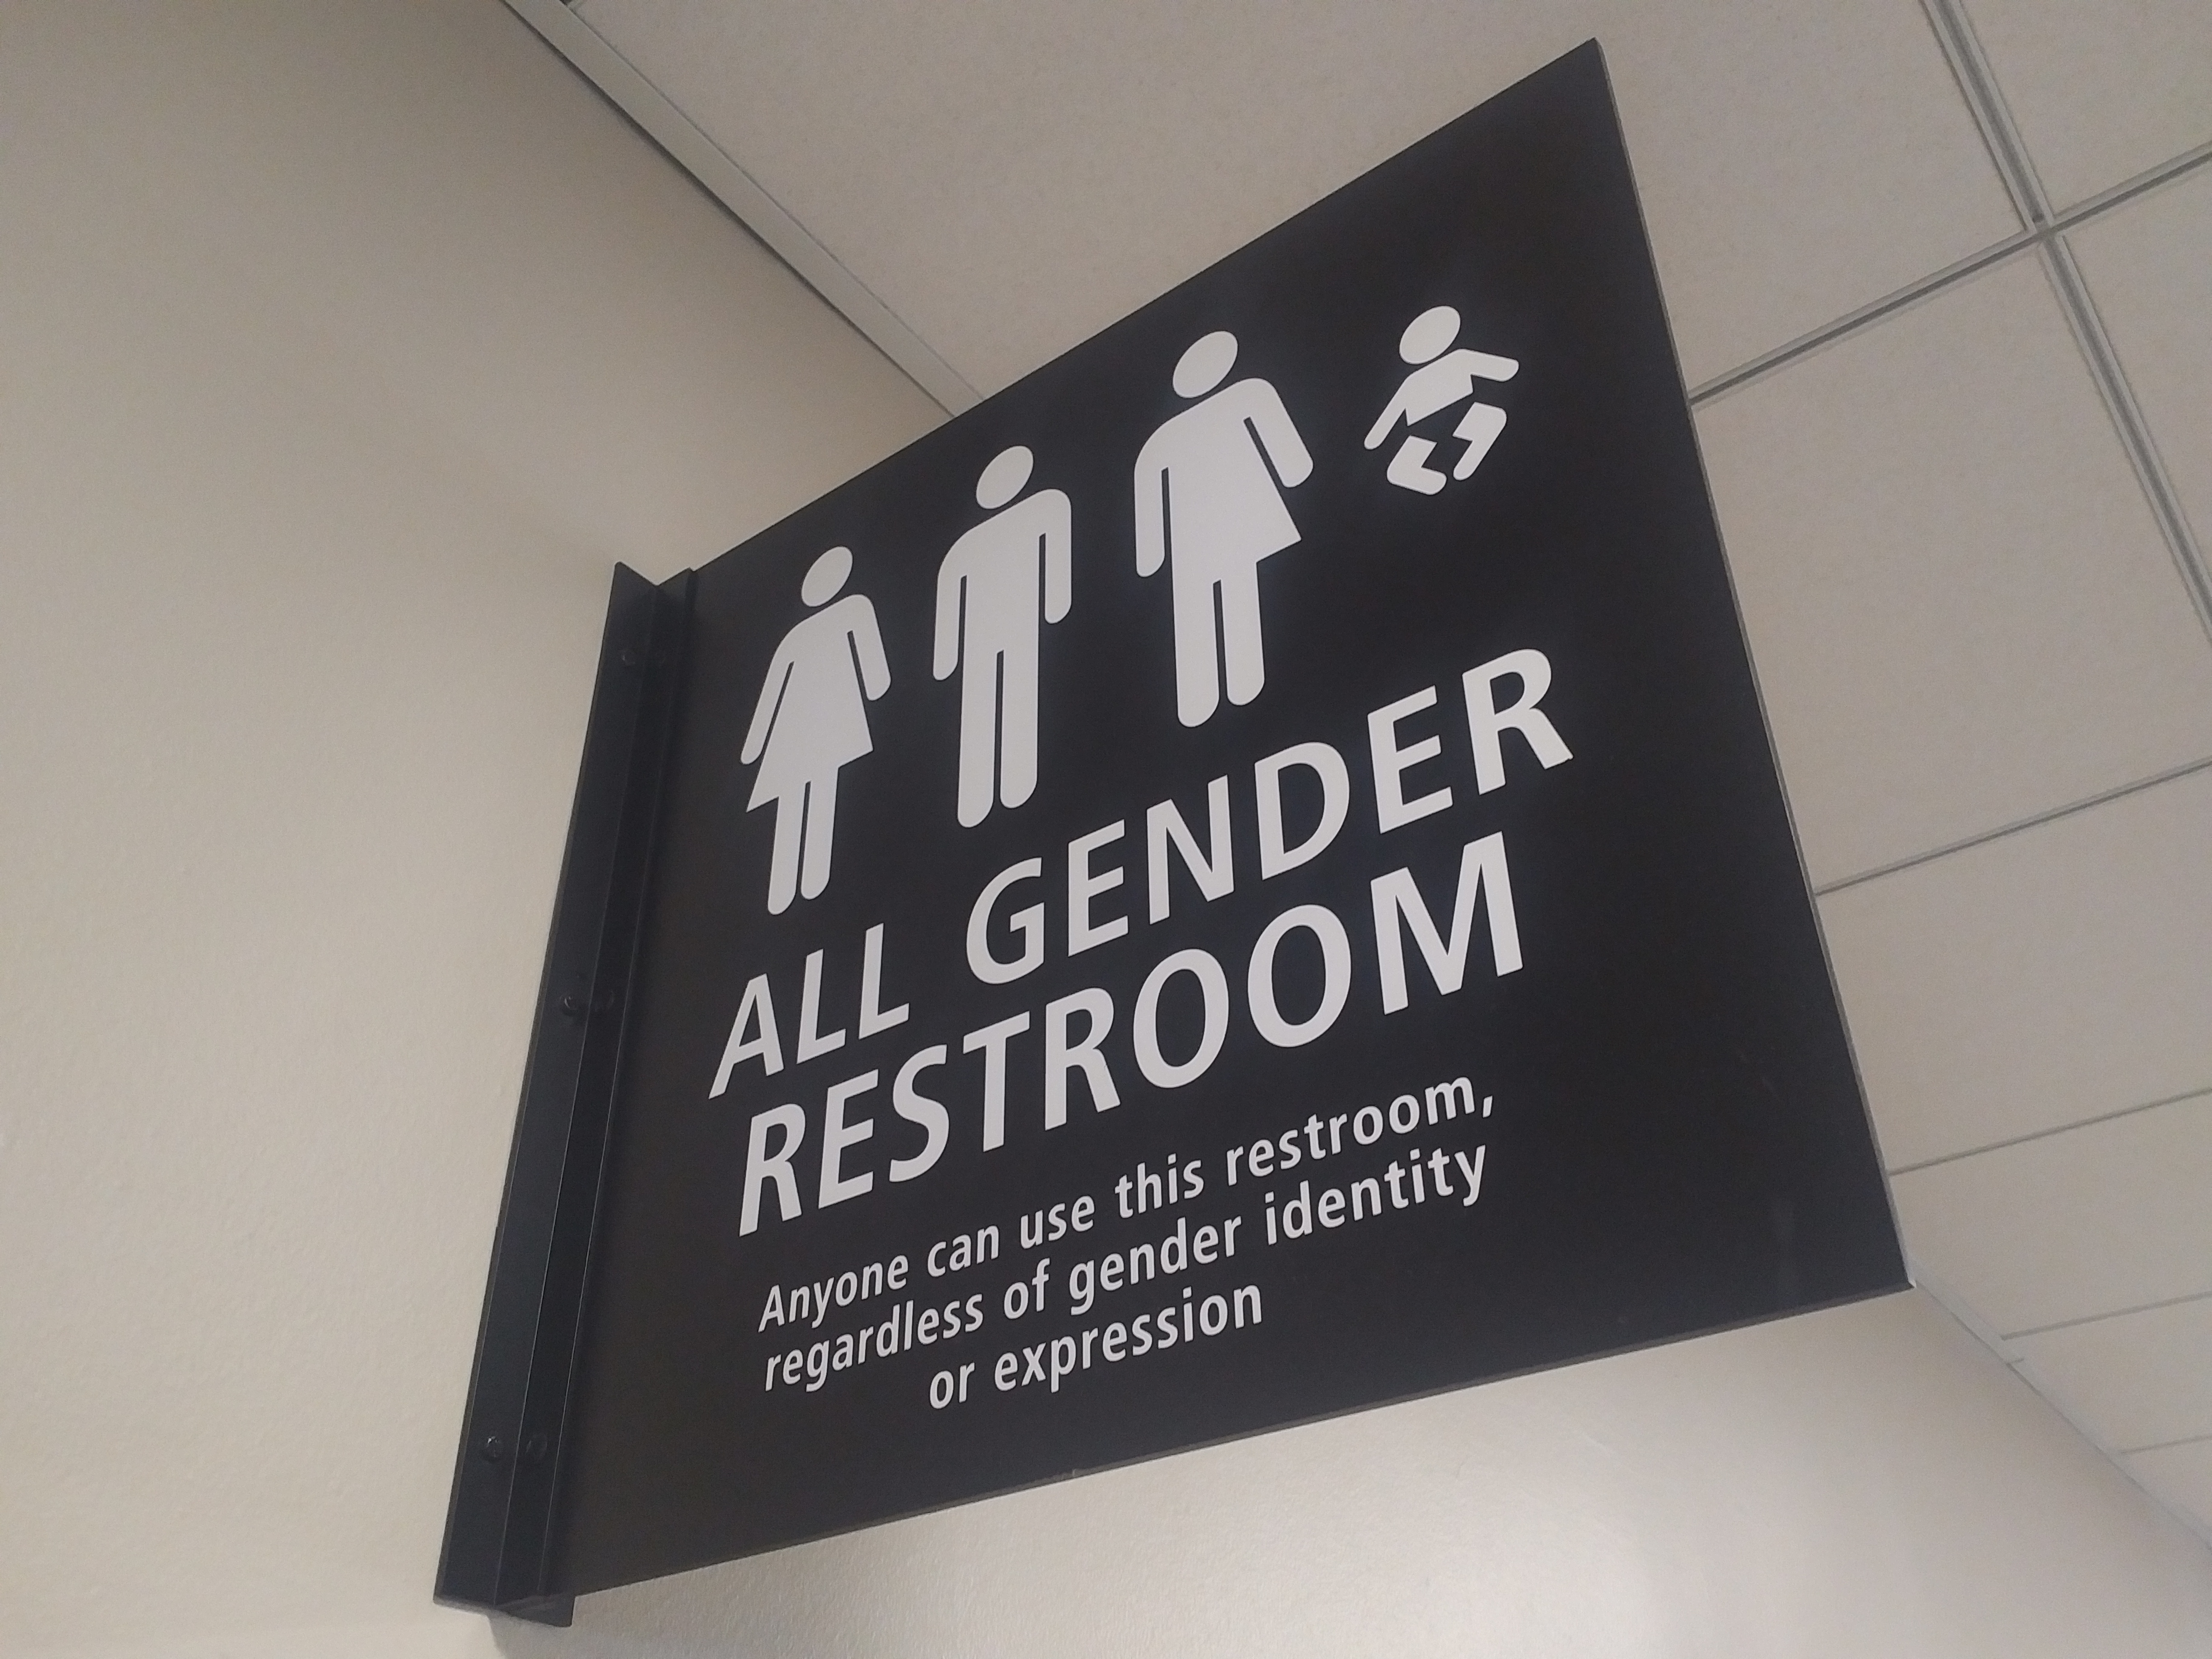 Sign for an All Gender restroom